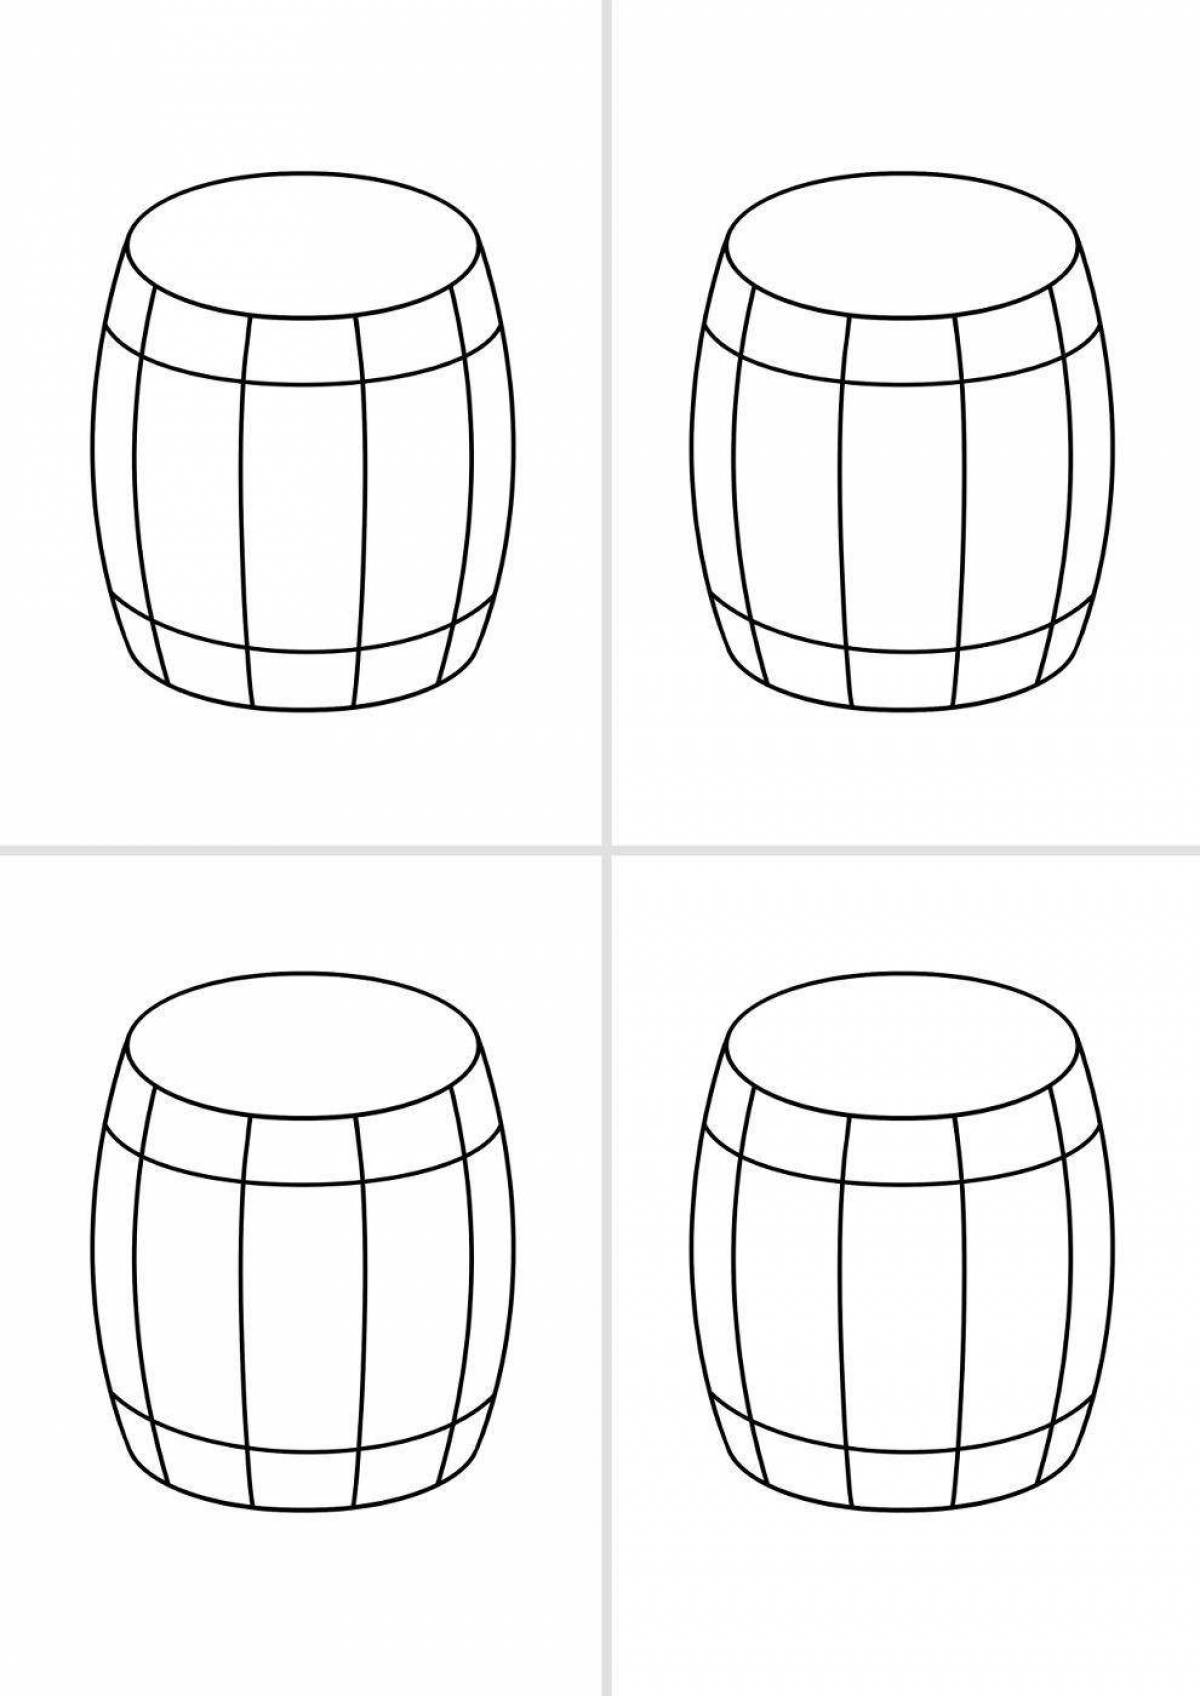 Fun barrel coloring for kids